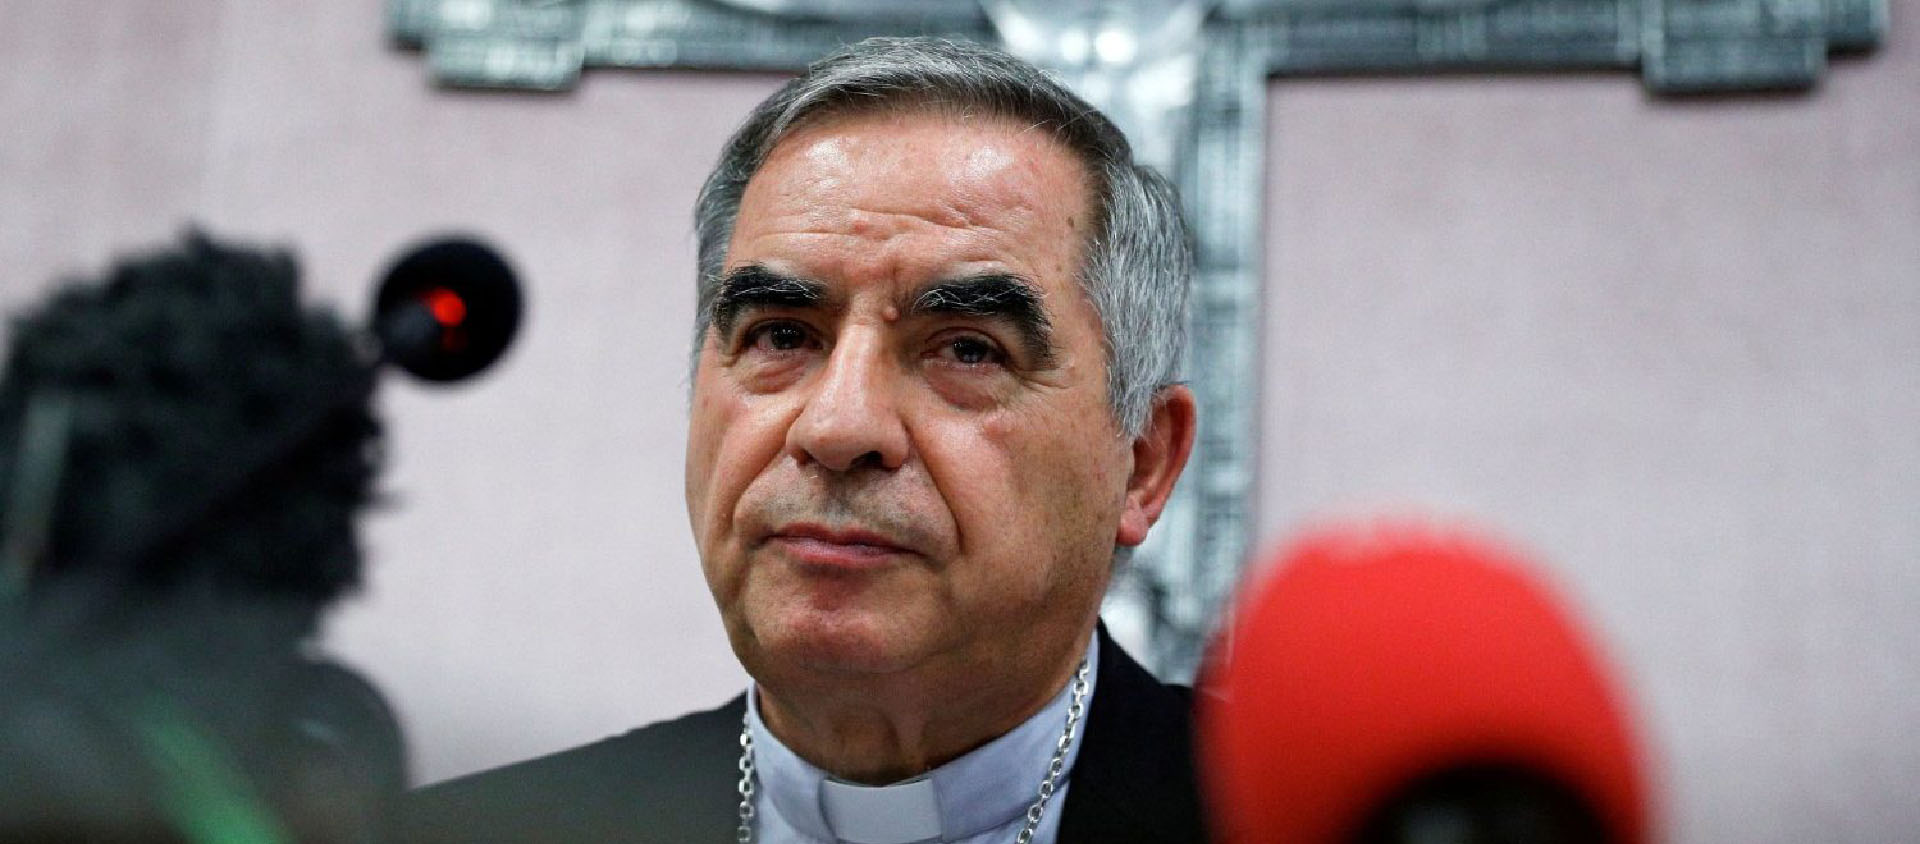 Le promoteur de justice a requis 7 ans et trois mois de prison contre le cardinal Becciu | © Vatican News